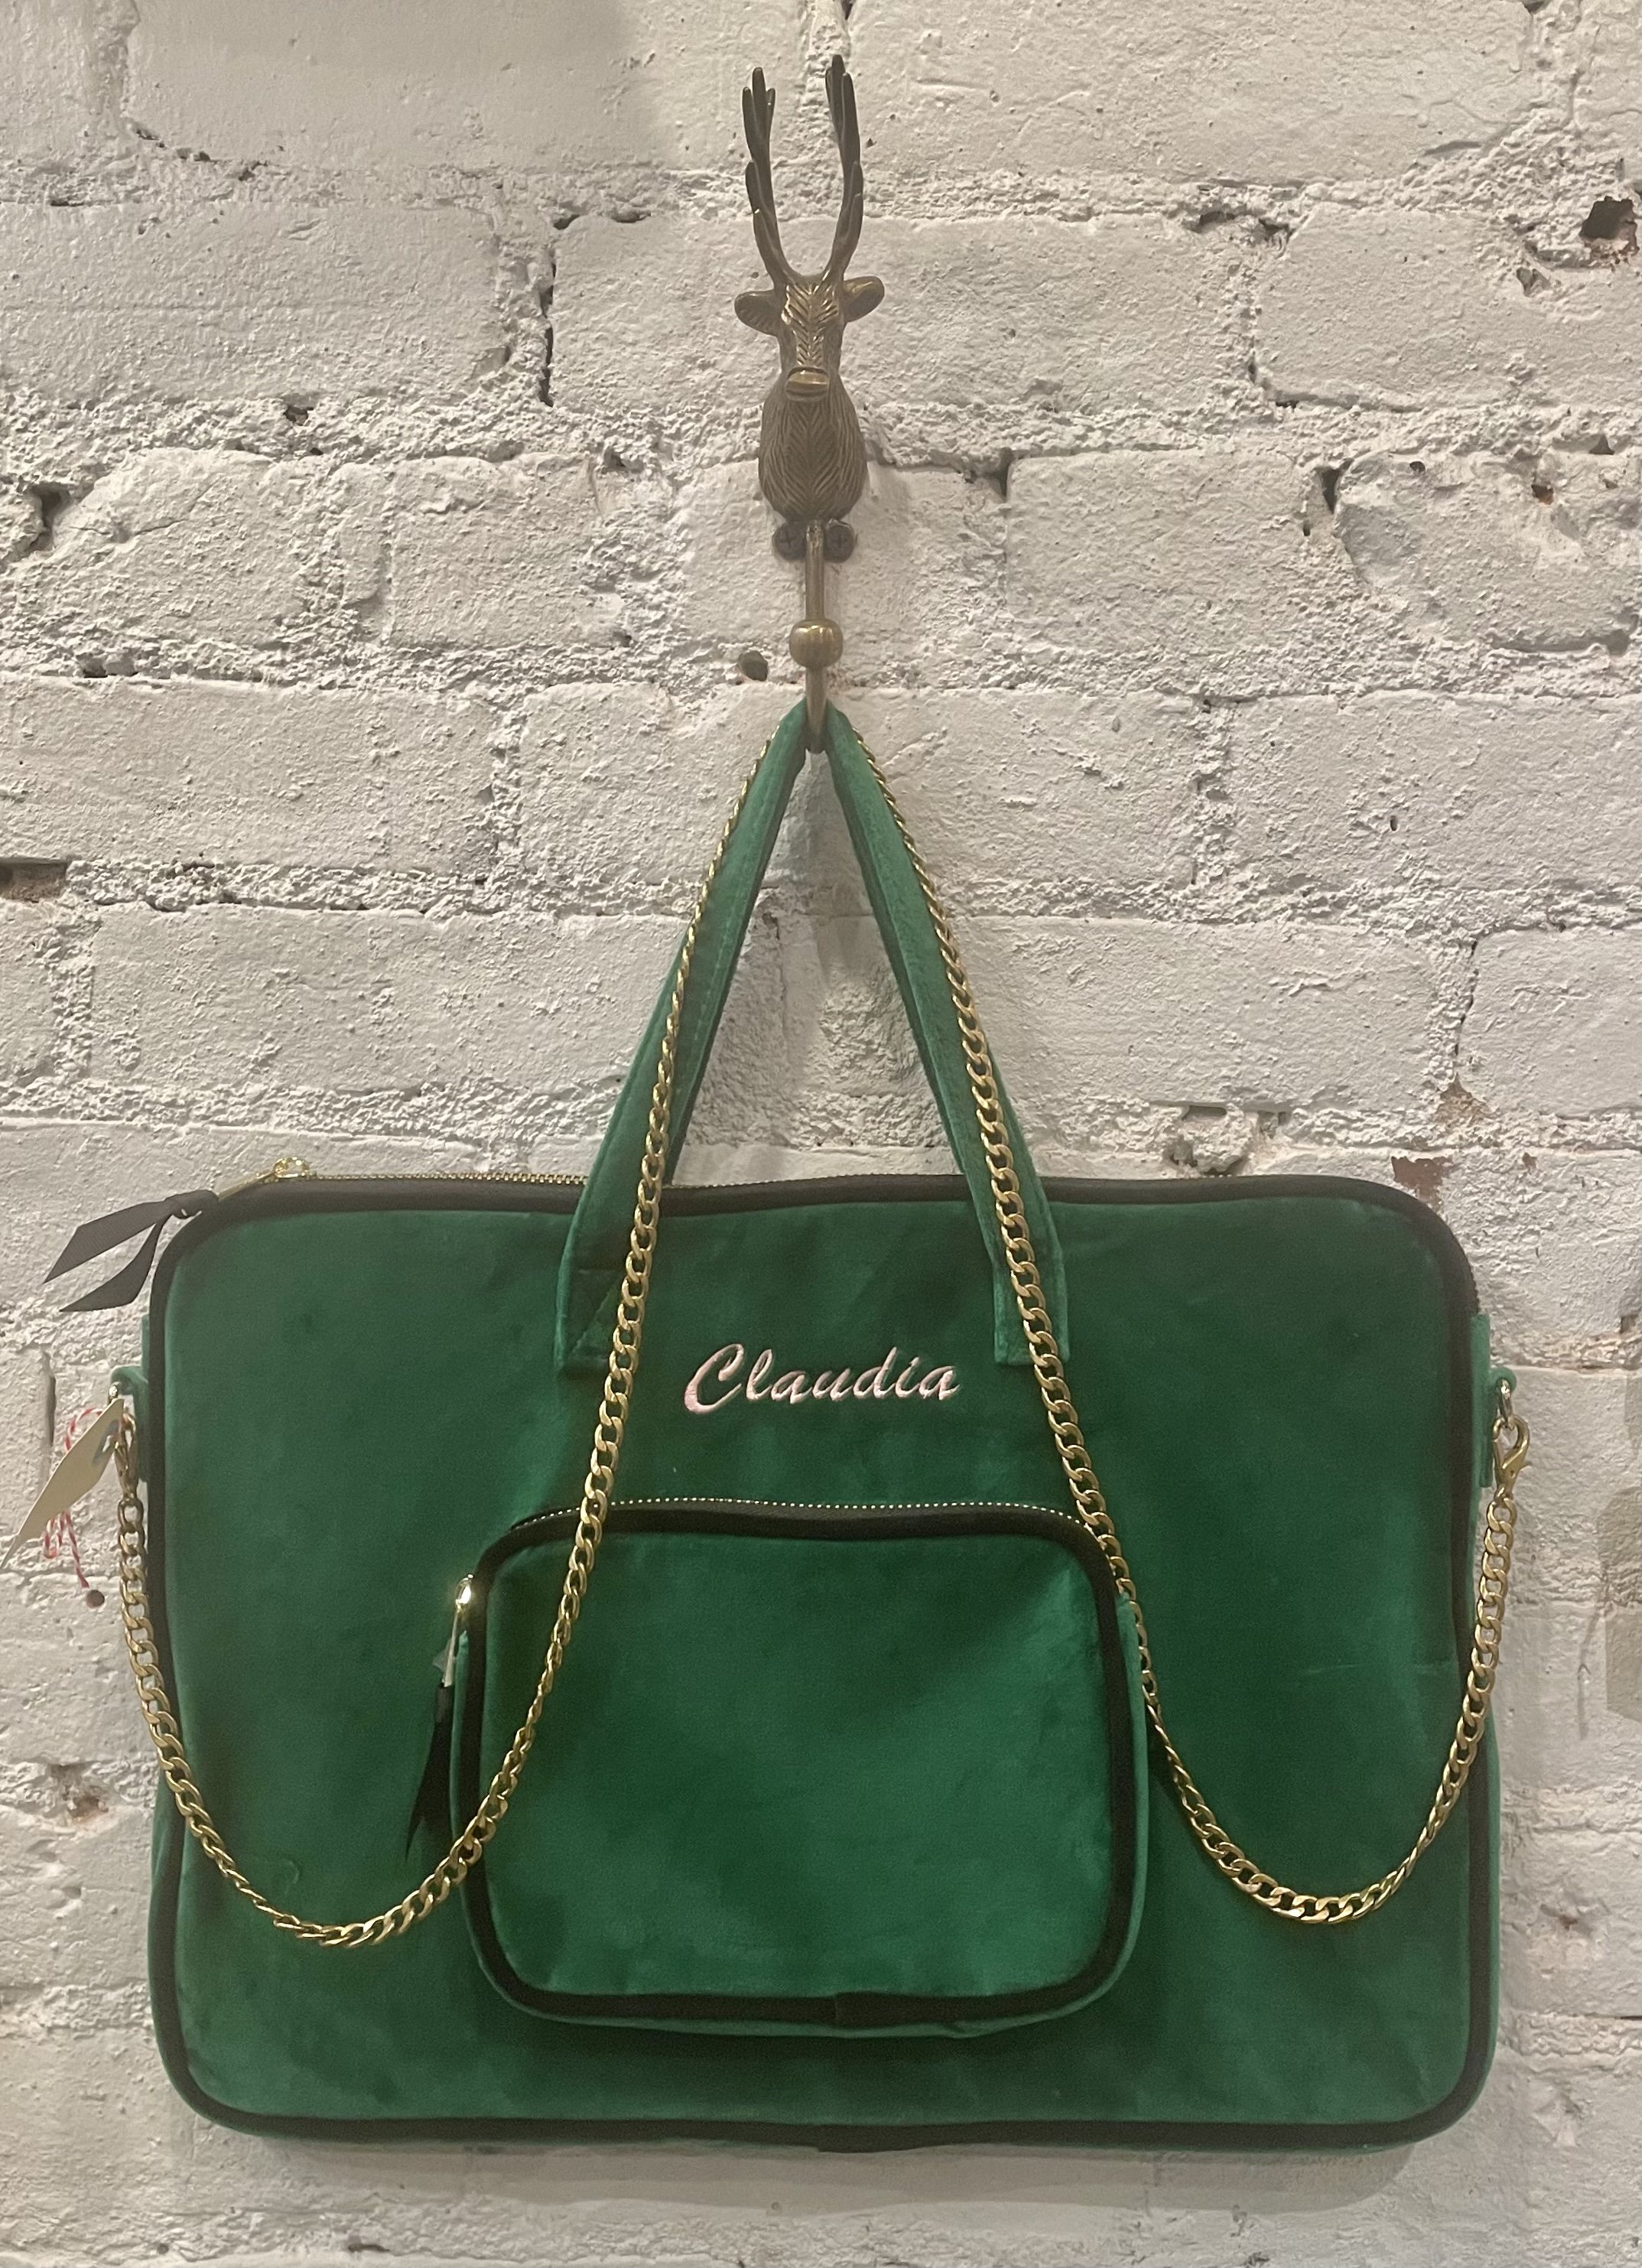 Prada Canvas Tote Bag  Rent Prada Handbags for $55/month